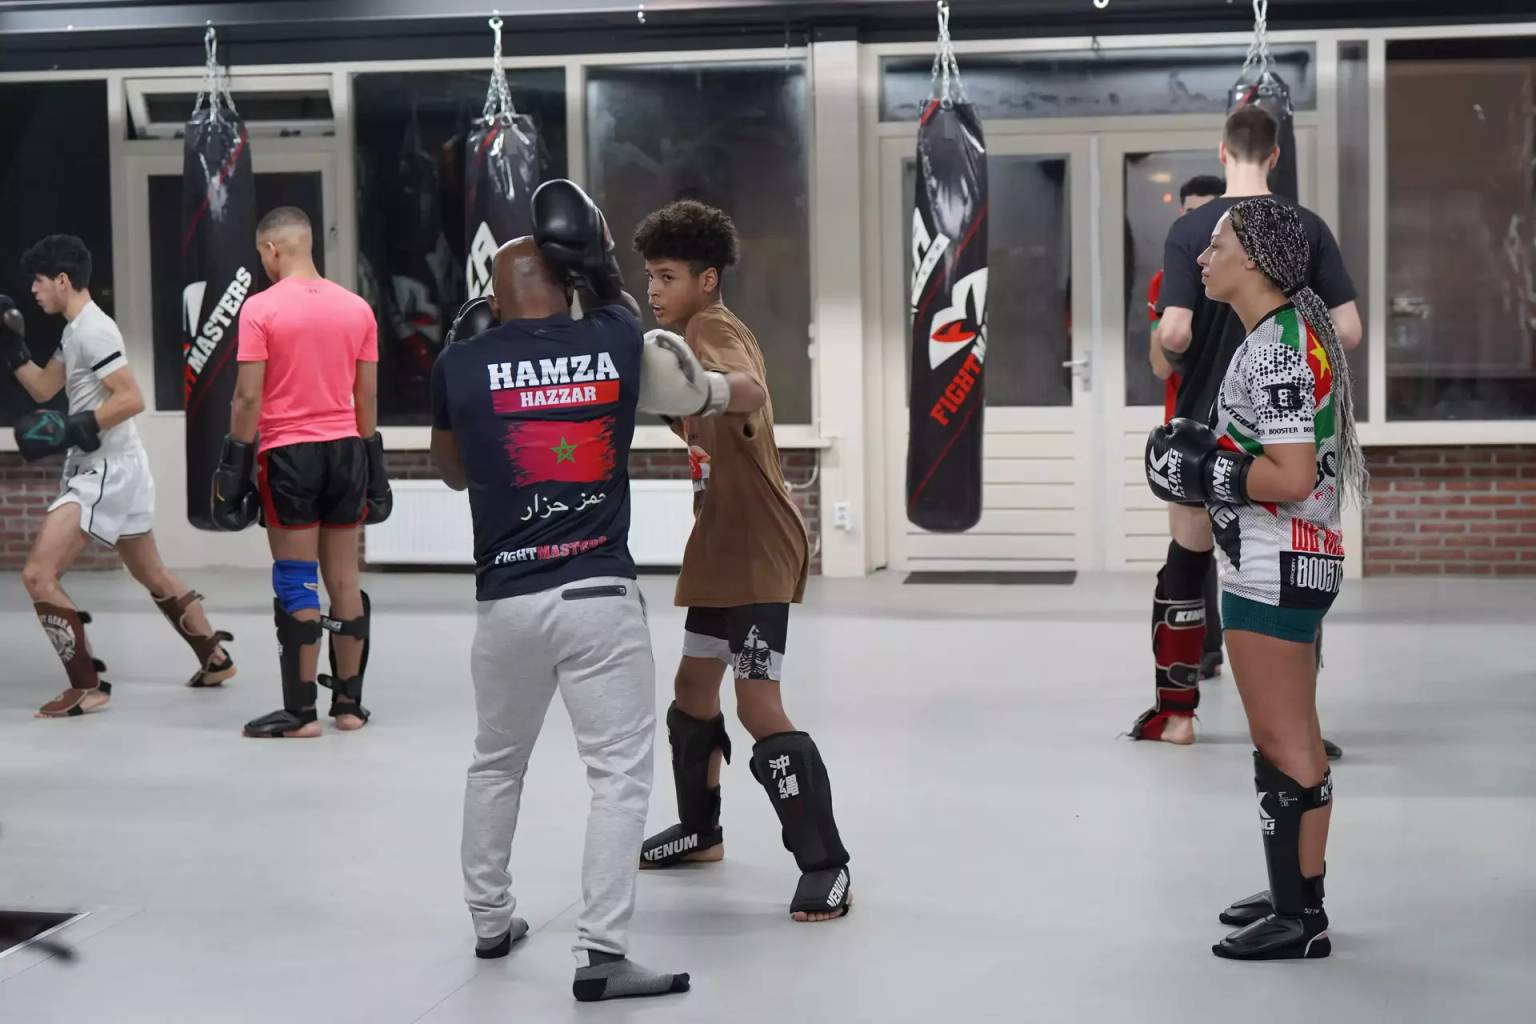 Mensen zijn bezig met een vechtsporttraining in een sportschool, waarbij ze beschermende uitrusting dragen en verschillende technieken oefenen. Bokszakken zijn zichtbaar en de sfeer is gefocust op training.